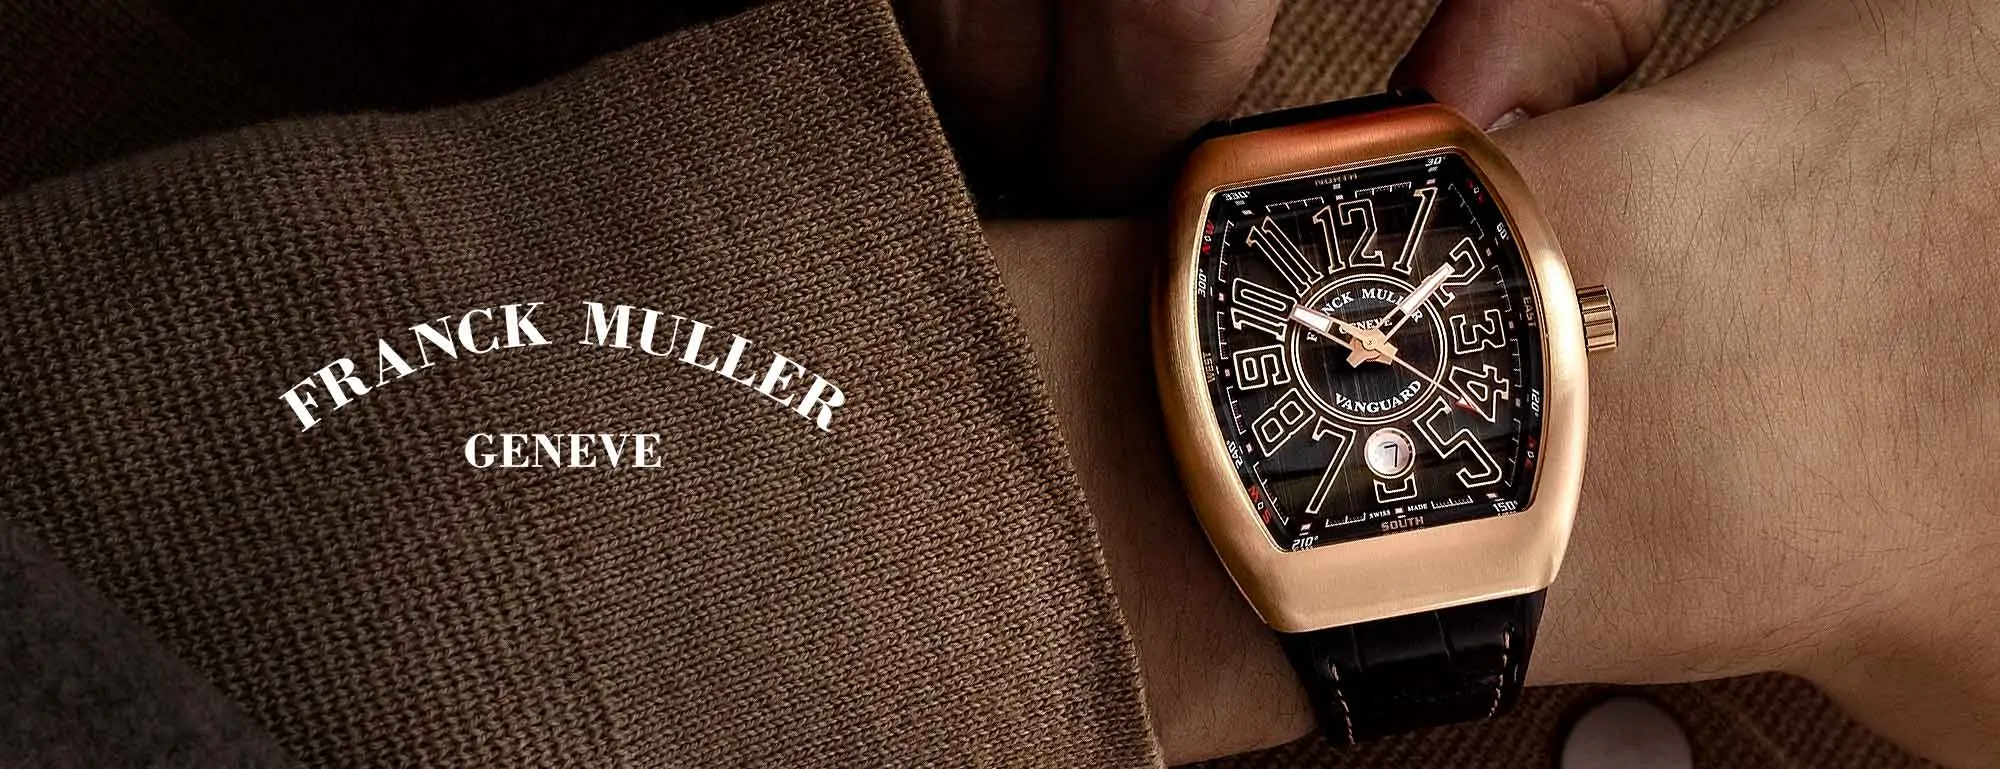 Franck Muller hodinky